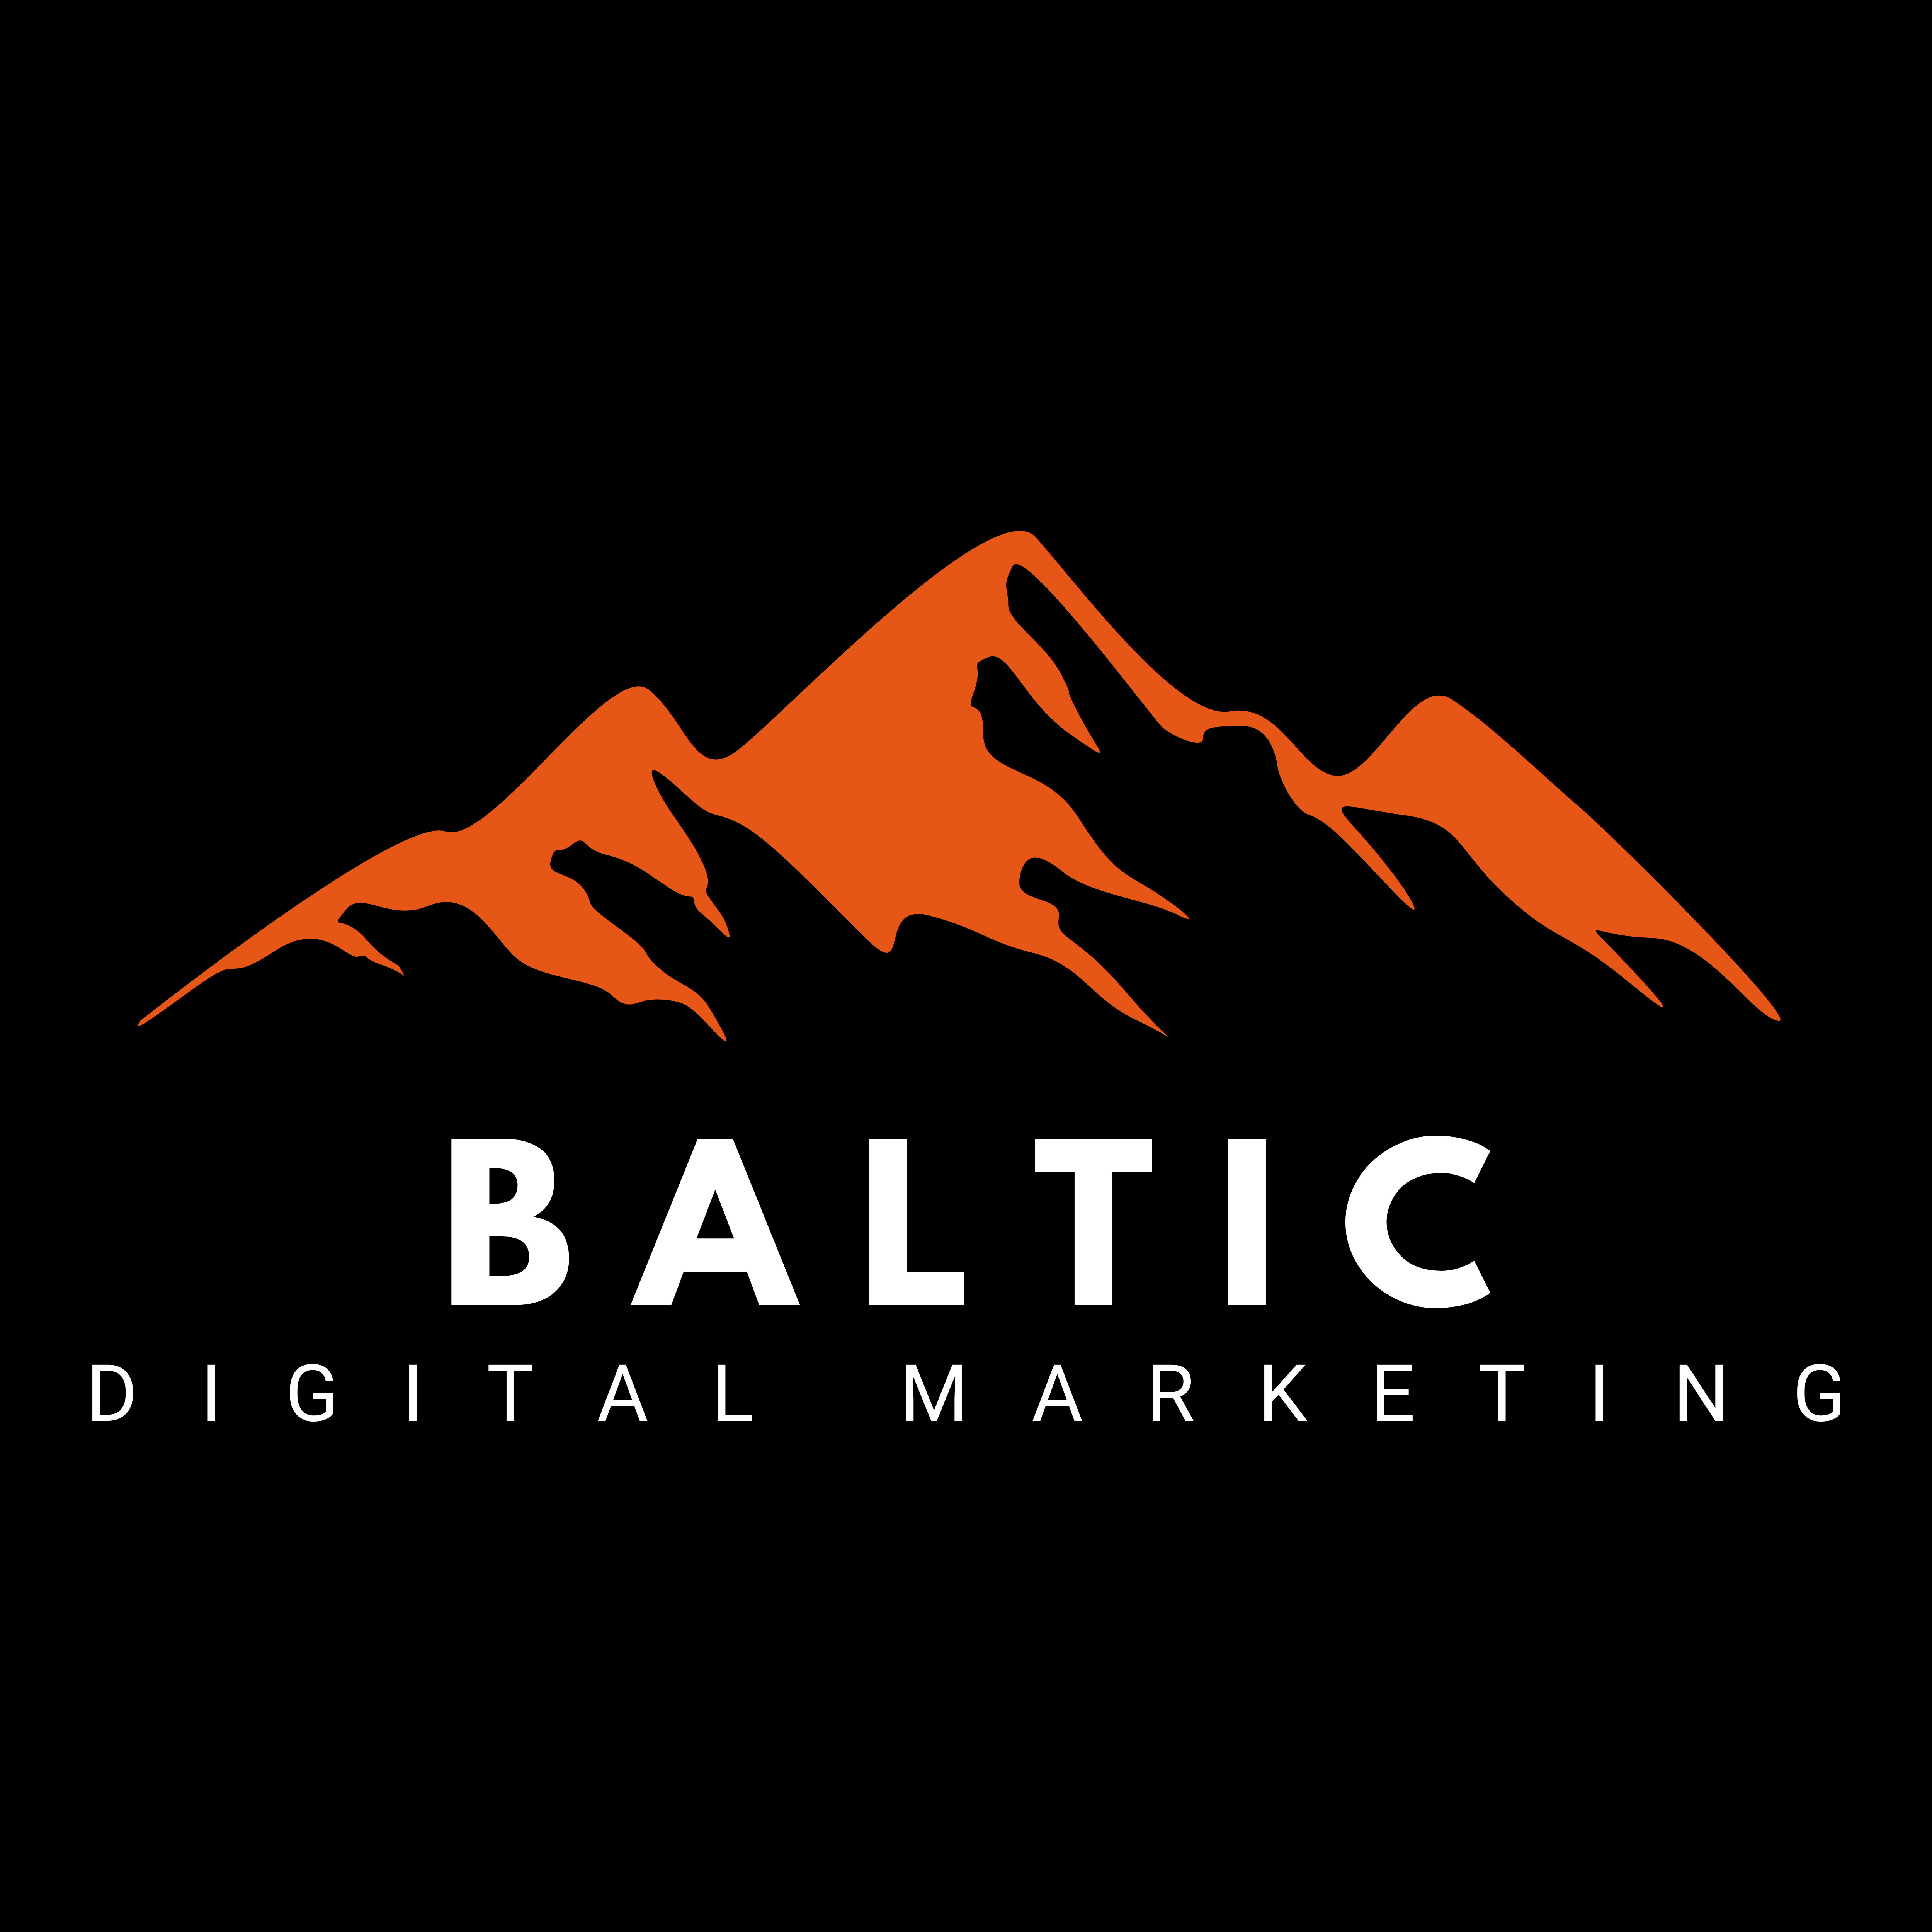 baltic-digital-marketing-logo-manchester-digital-agency